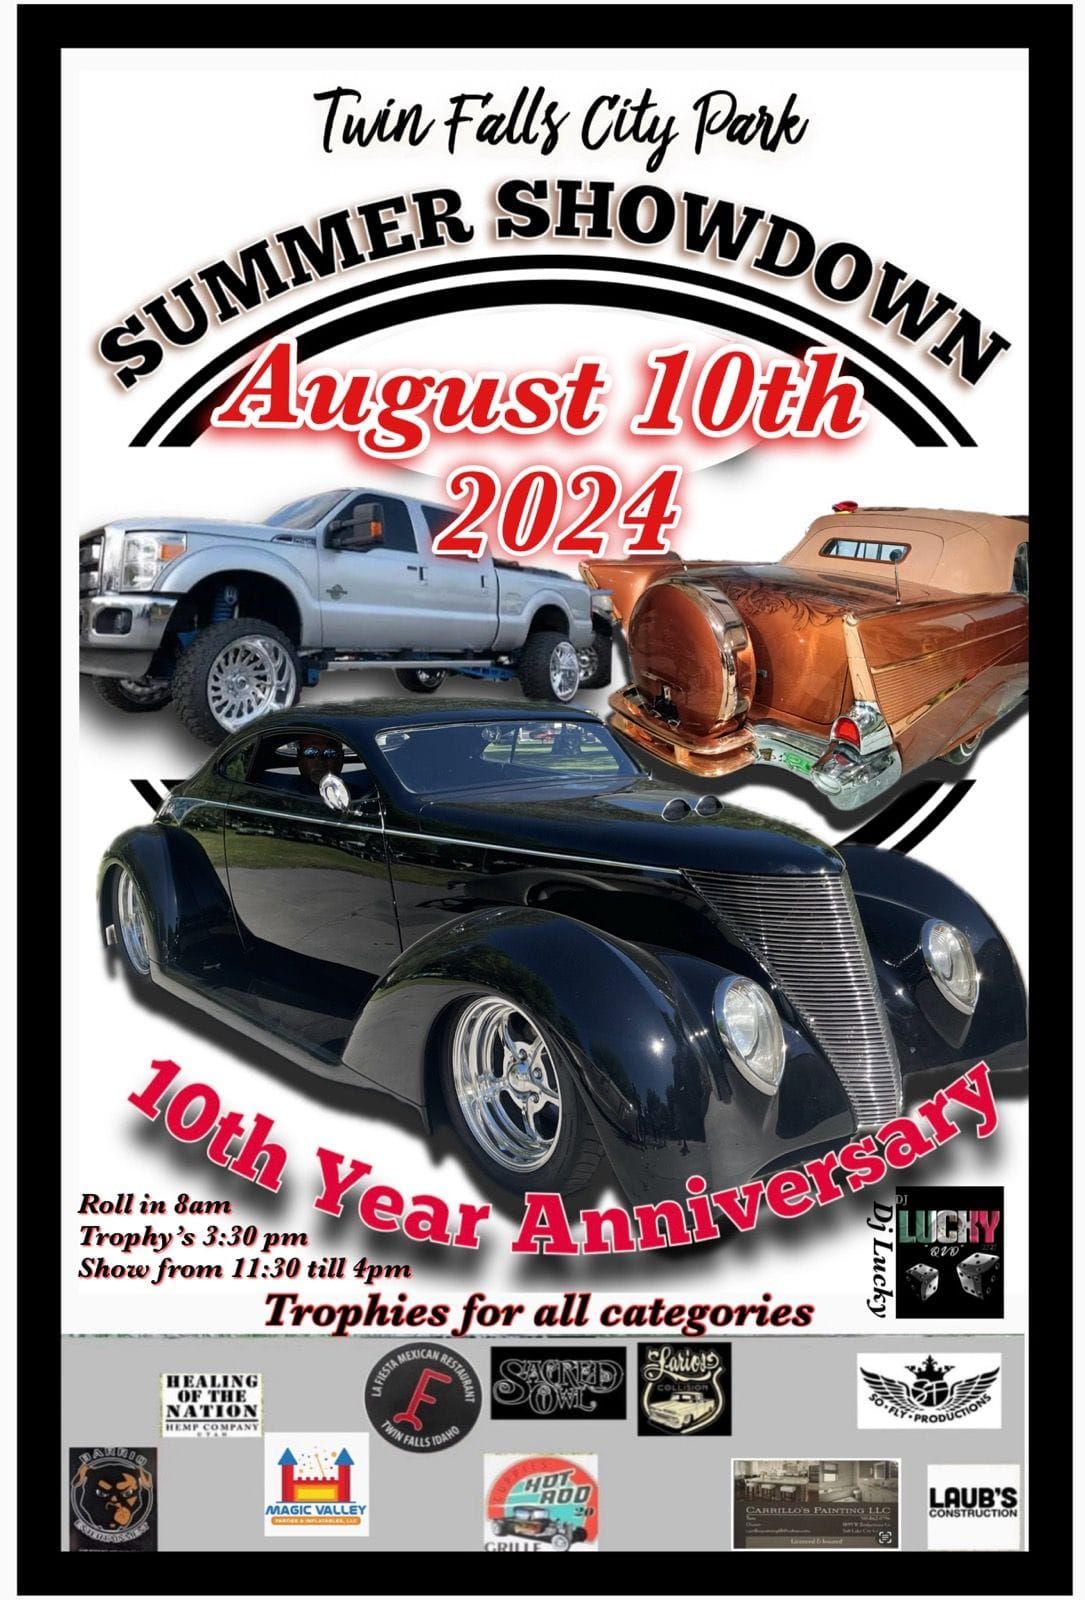 10th Annual Summer Showdown Car Show